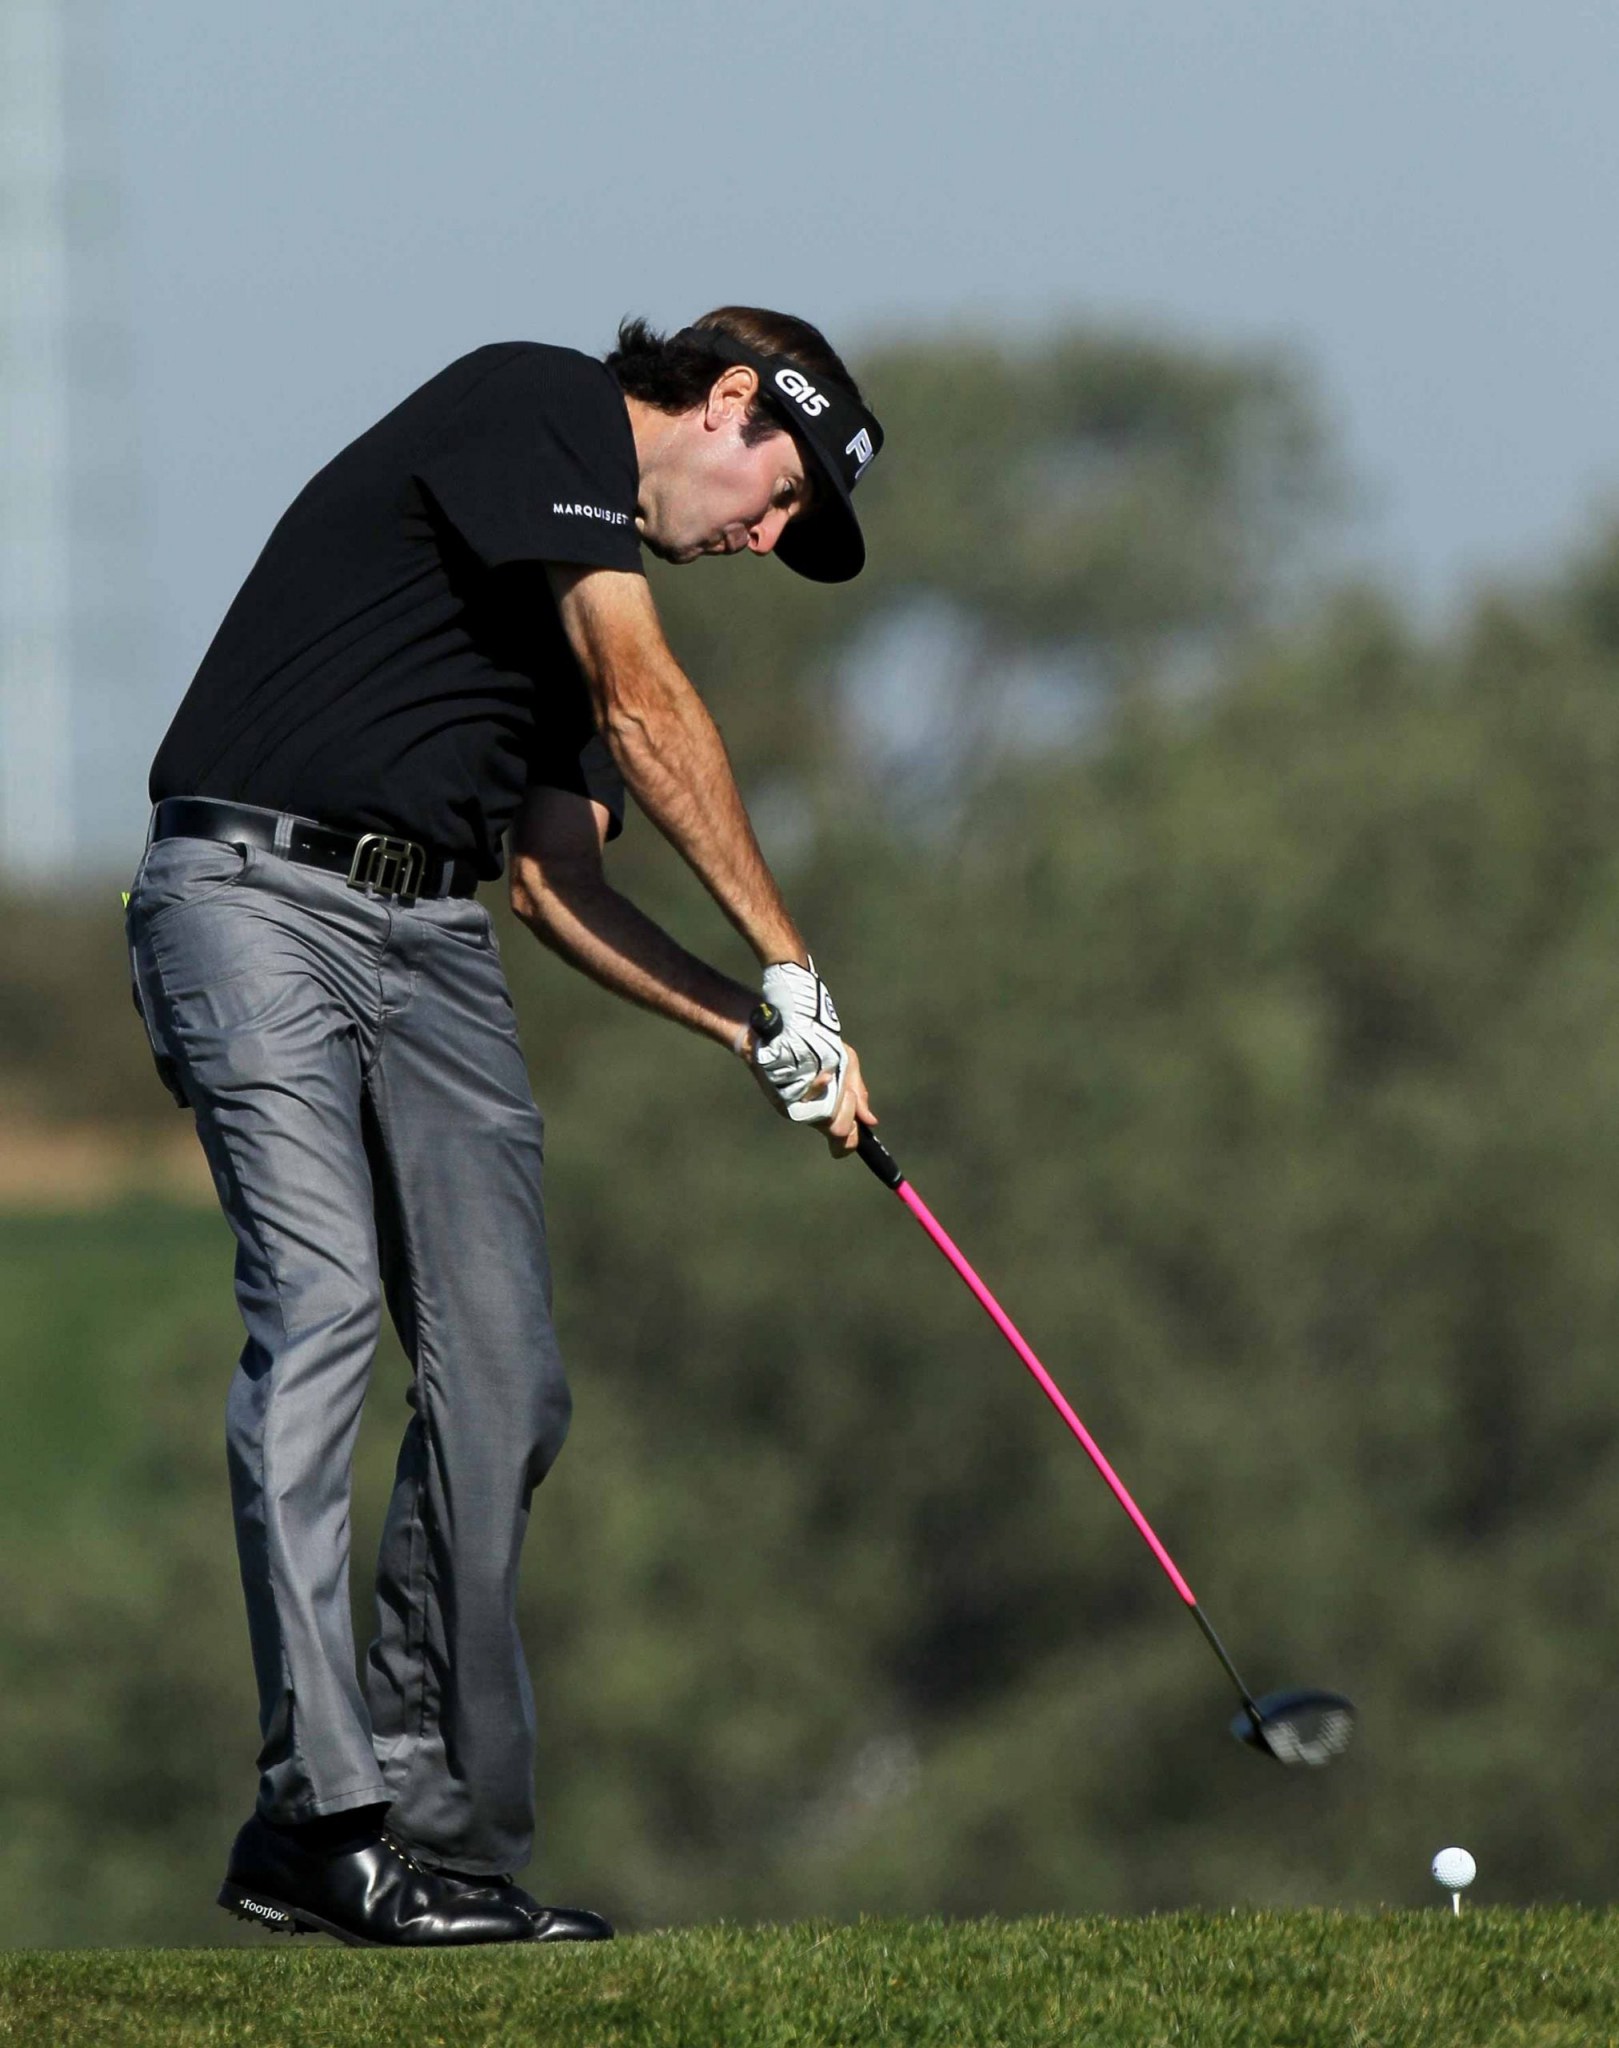 Sao chép 6 bước di chuyển từ các chuyên gia Golf để cải thiện swing.